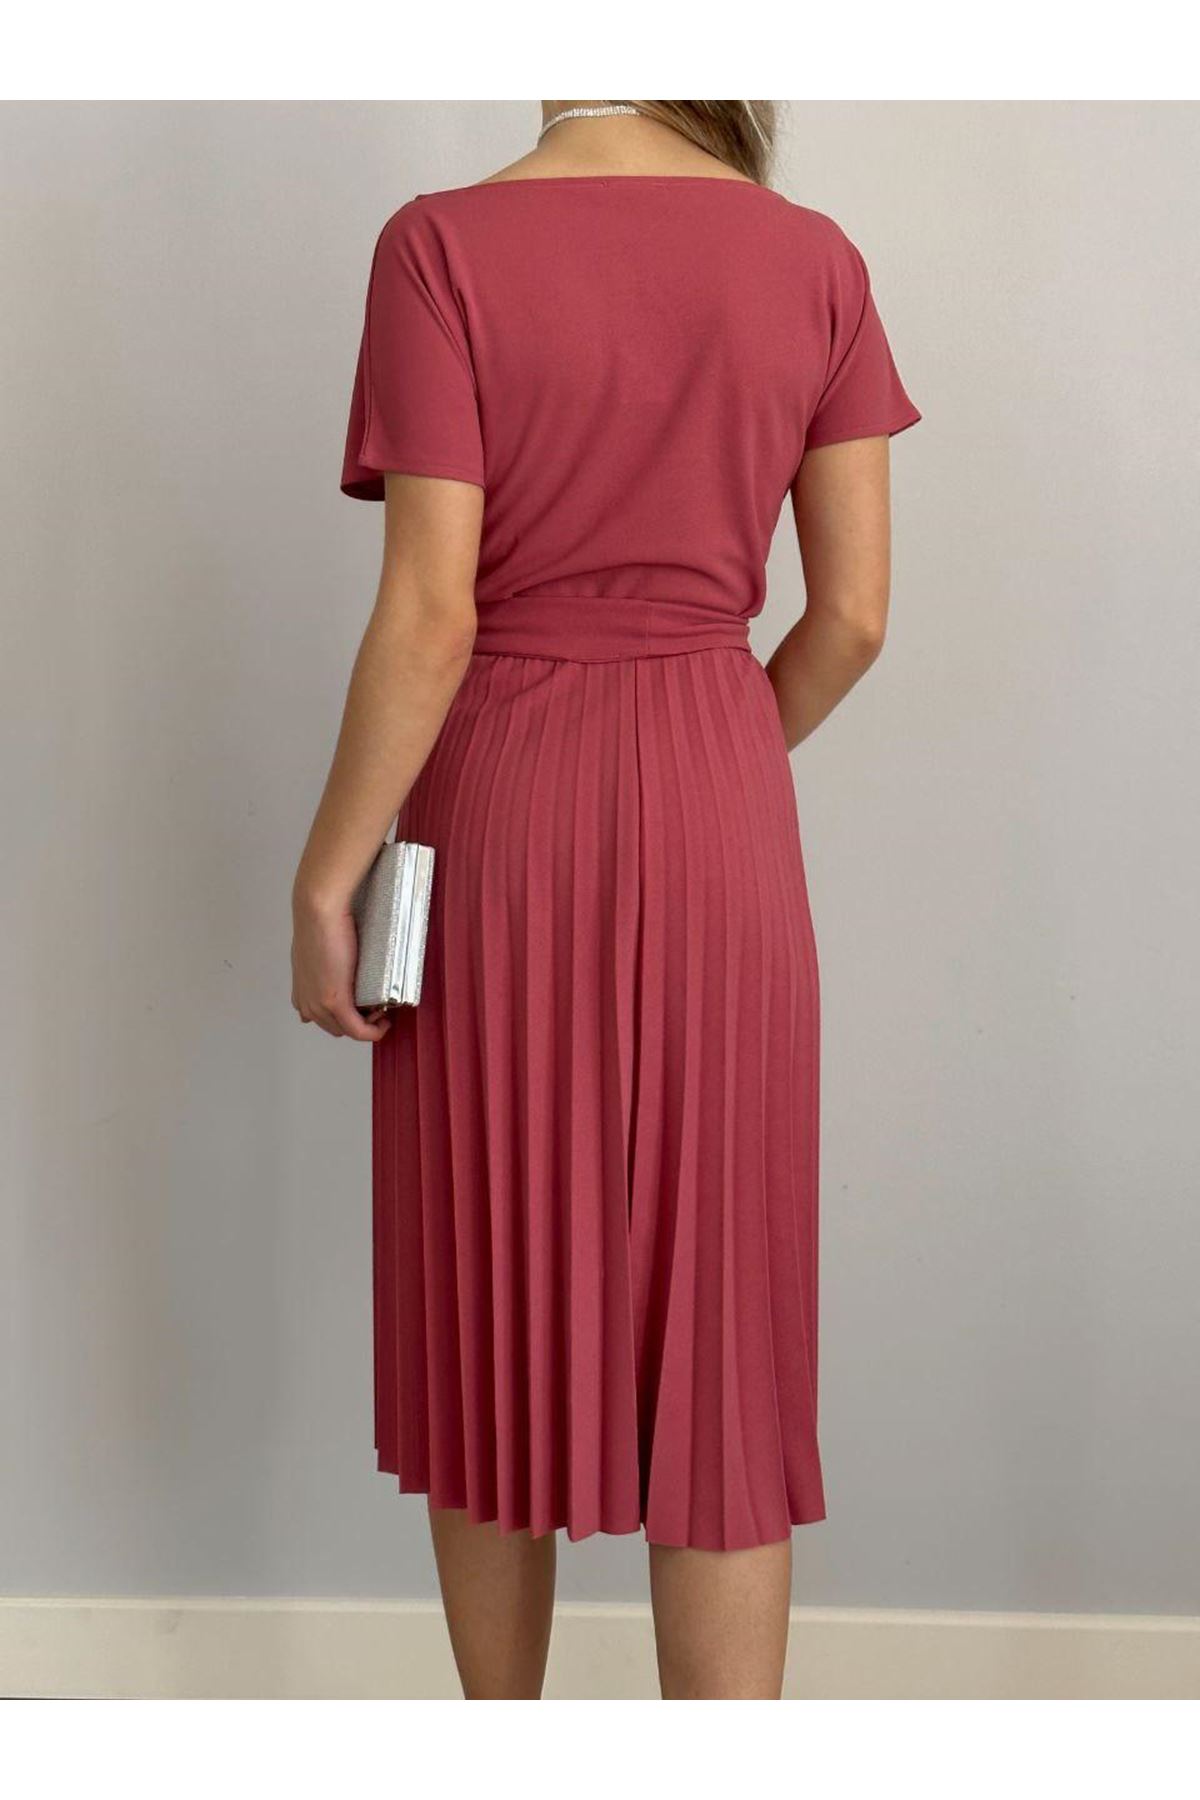 Kadın Gül Kurusu Krep Kumaş Pliseli Kuşaklı Dizaltı Elbise 2E-2126